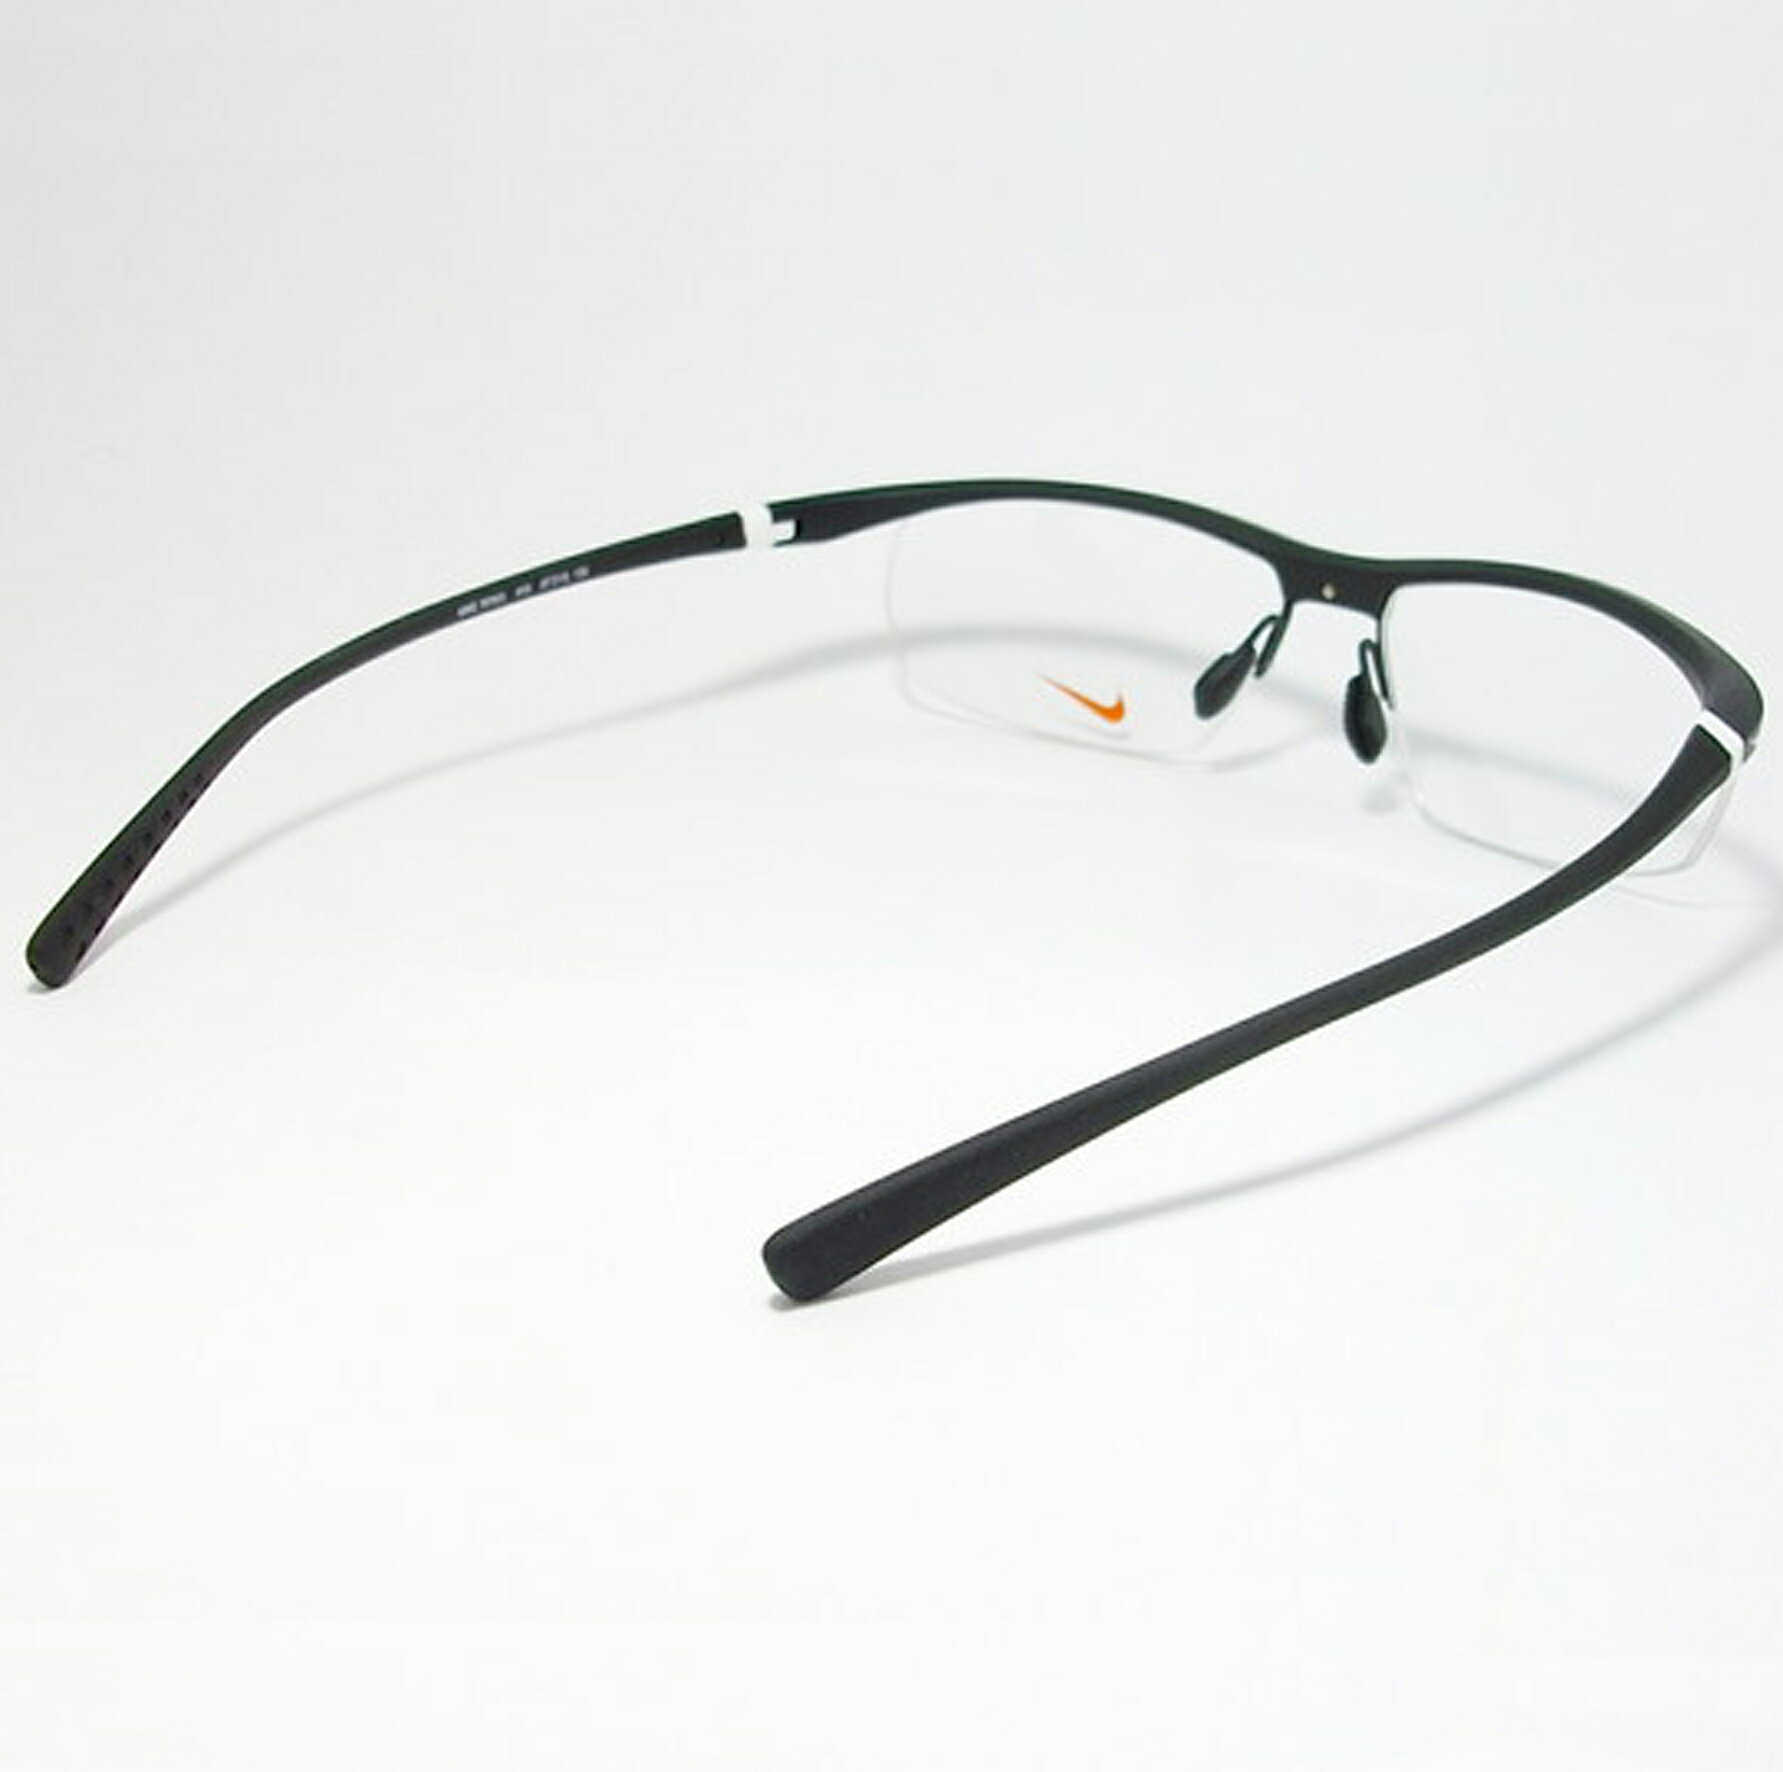 NIKE ナイキVORTEX ボルテックス軽量 スポーツ 眼鏡 メガネ フレーム7070/3-010-57度付可 マットブラック/ホワイト